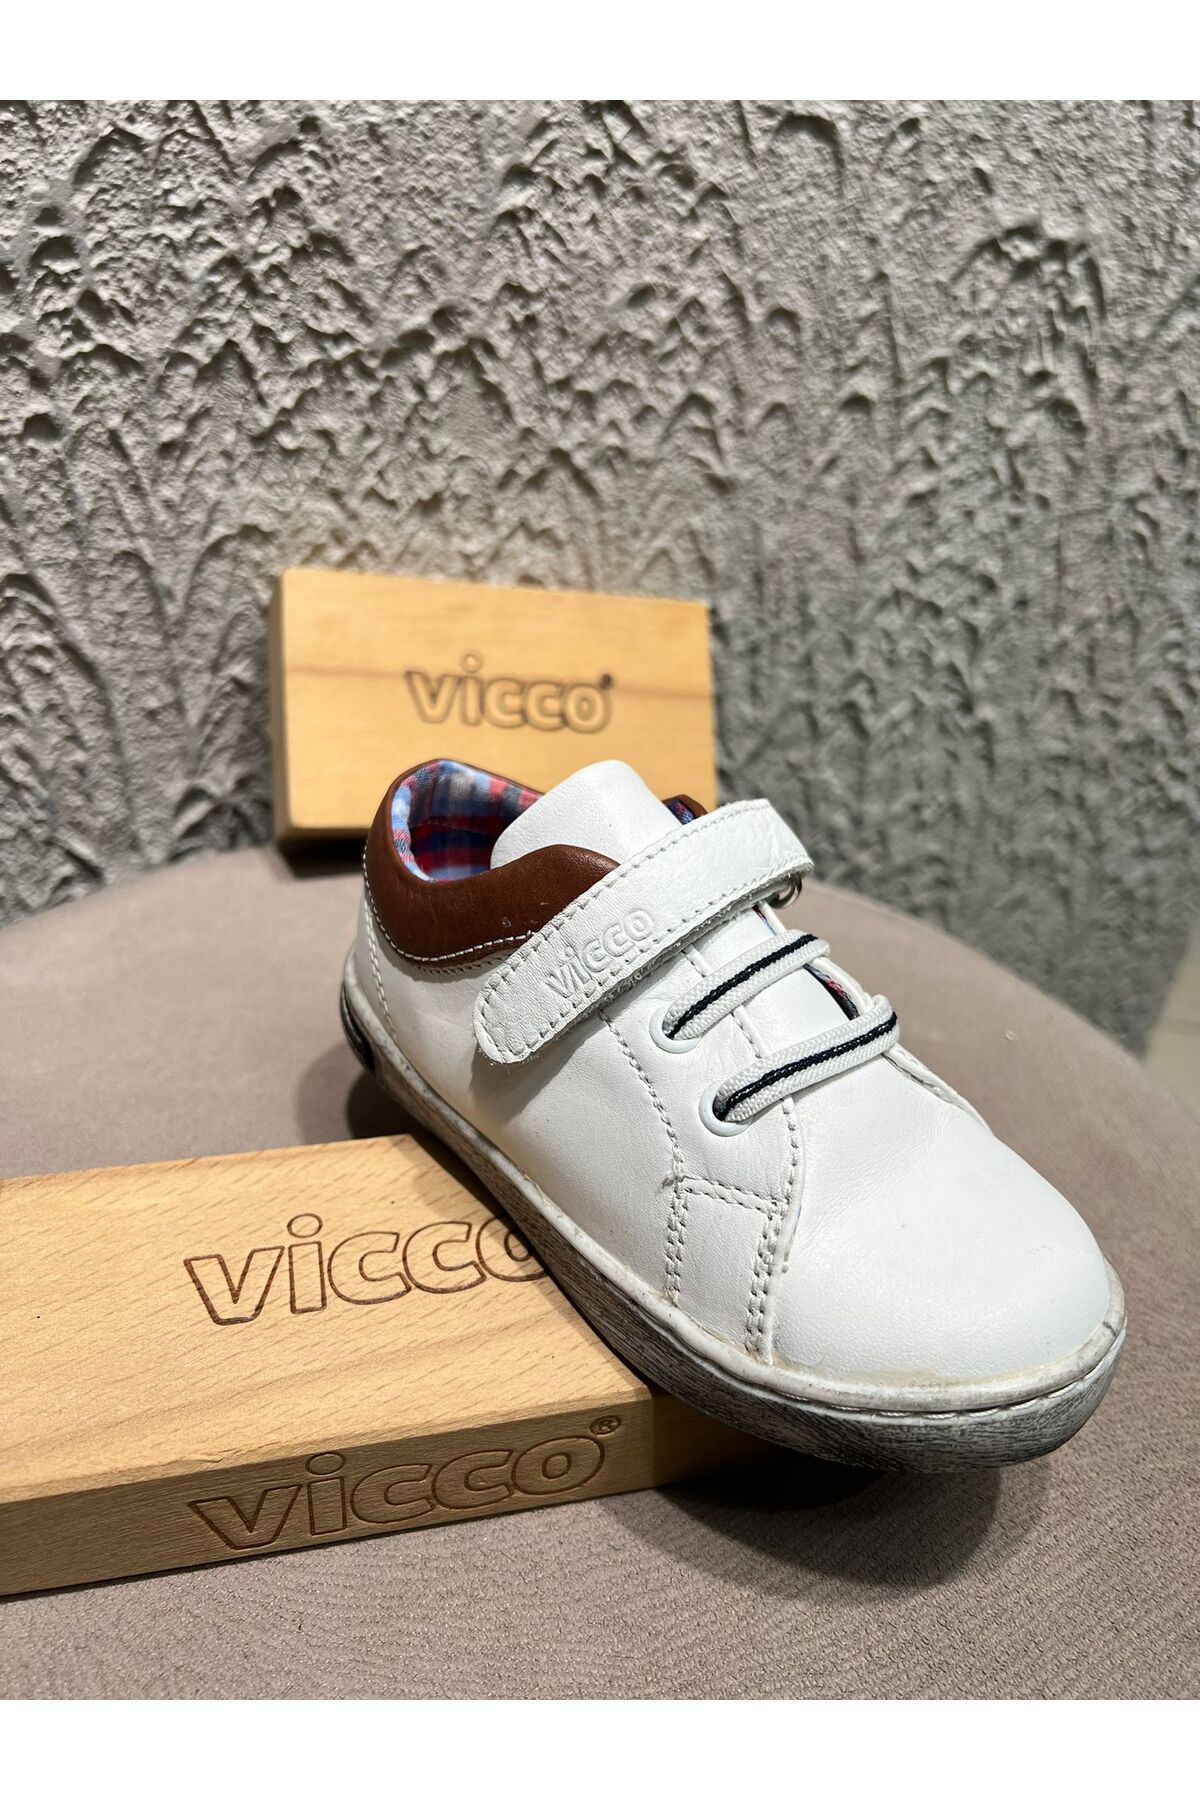 Vicco Beyaz Deri Bebek Ayakkabısı